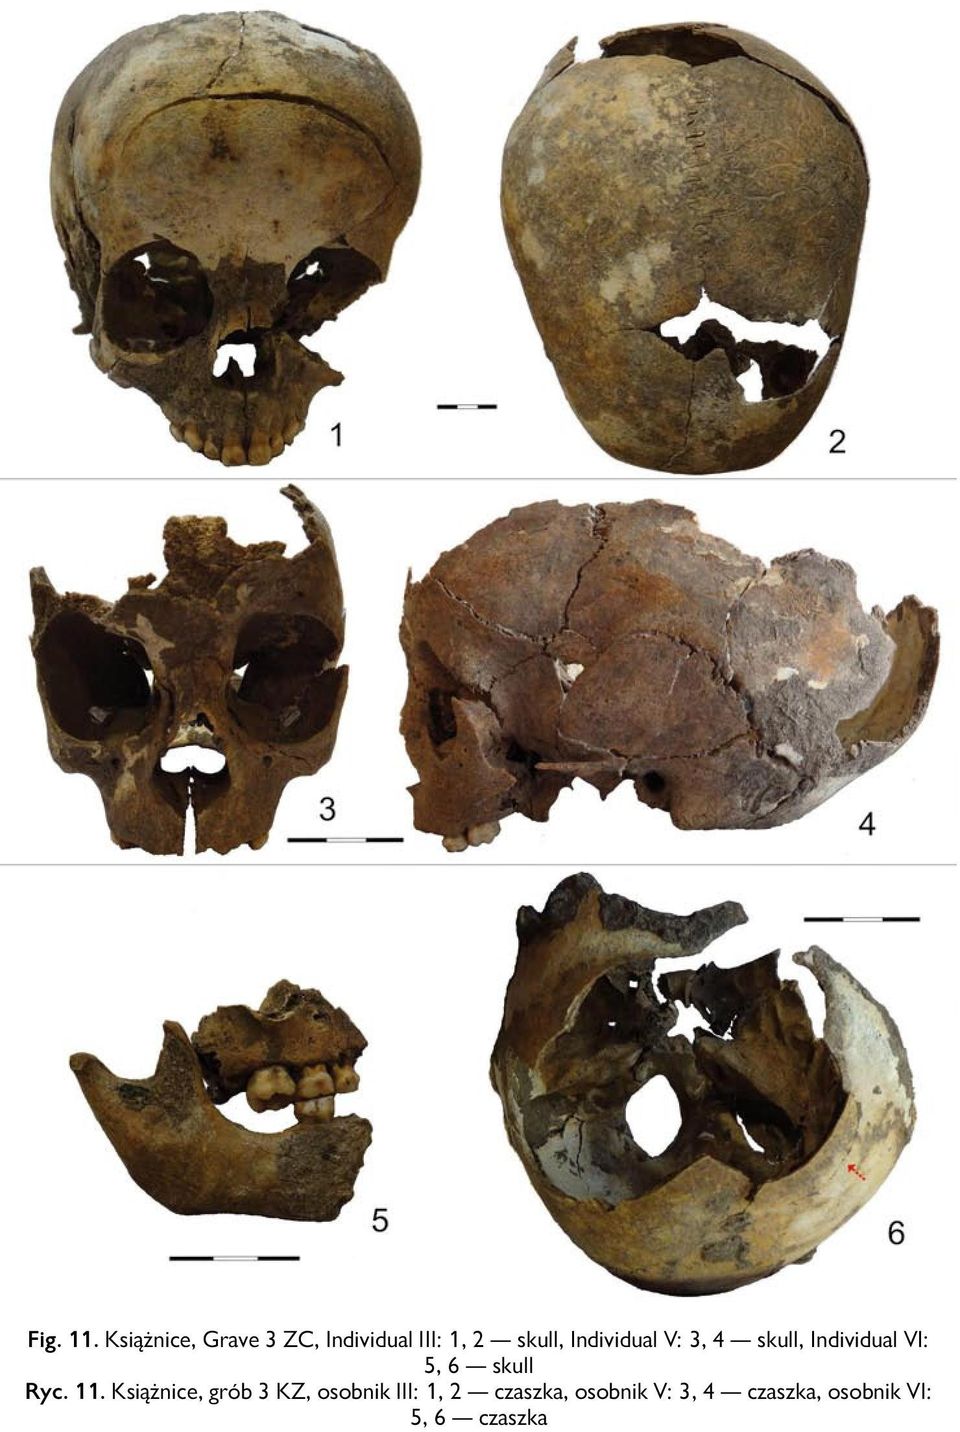 Individual V: 3, 4 skull, Individual VI: 5, 6 skull